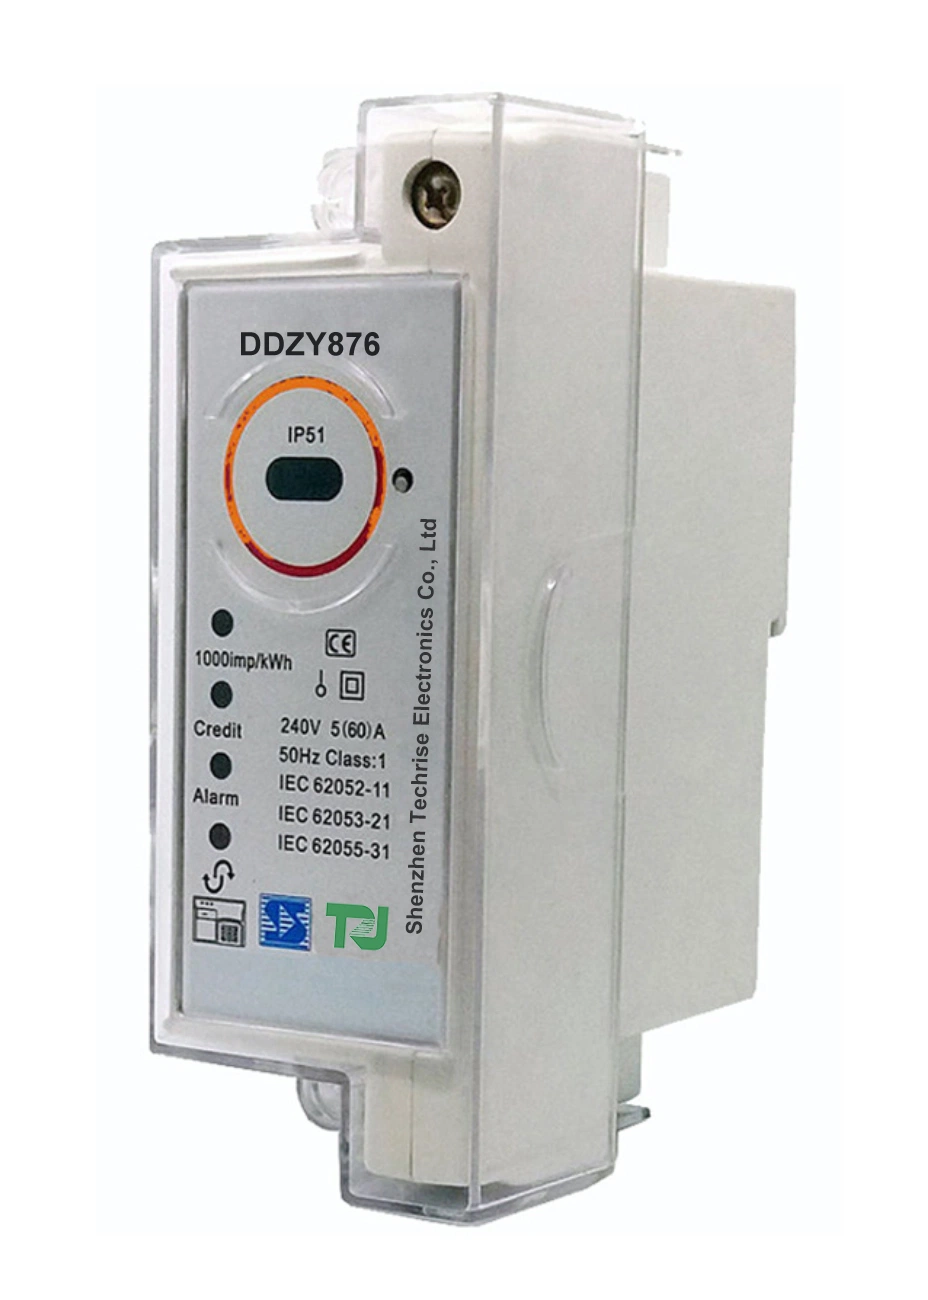 DDZY876 STS предоплата Postpayment одна фаза два провода Din-Rail Split электронных RF Лора модуль ЧПУ с ЗУ сообщение Smart Energy дозатора